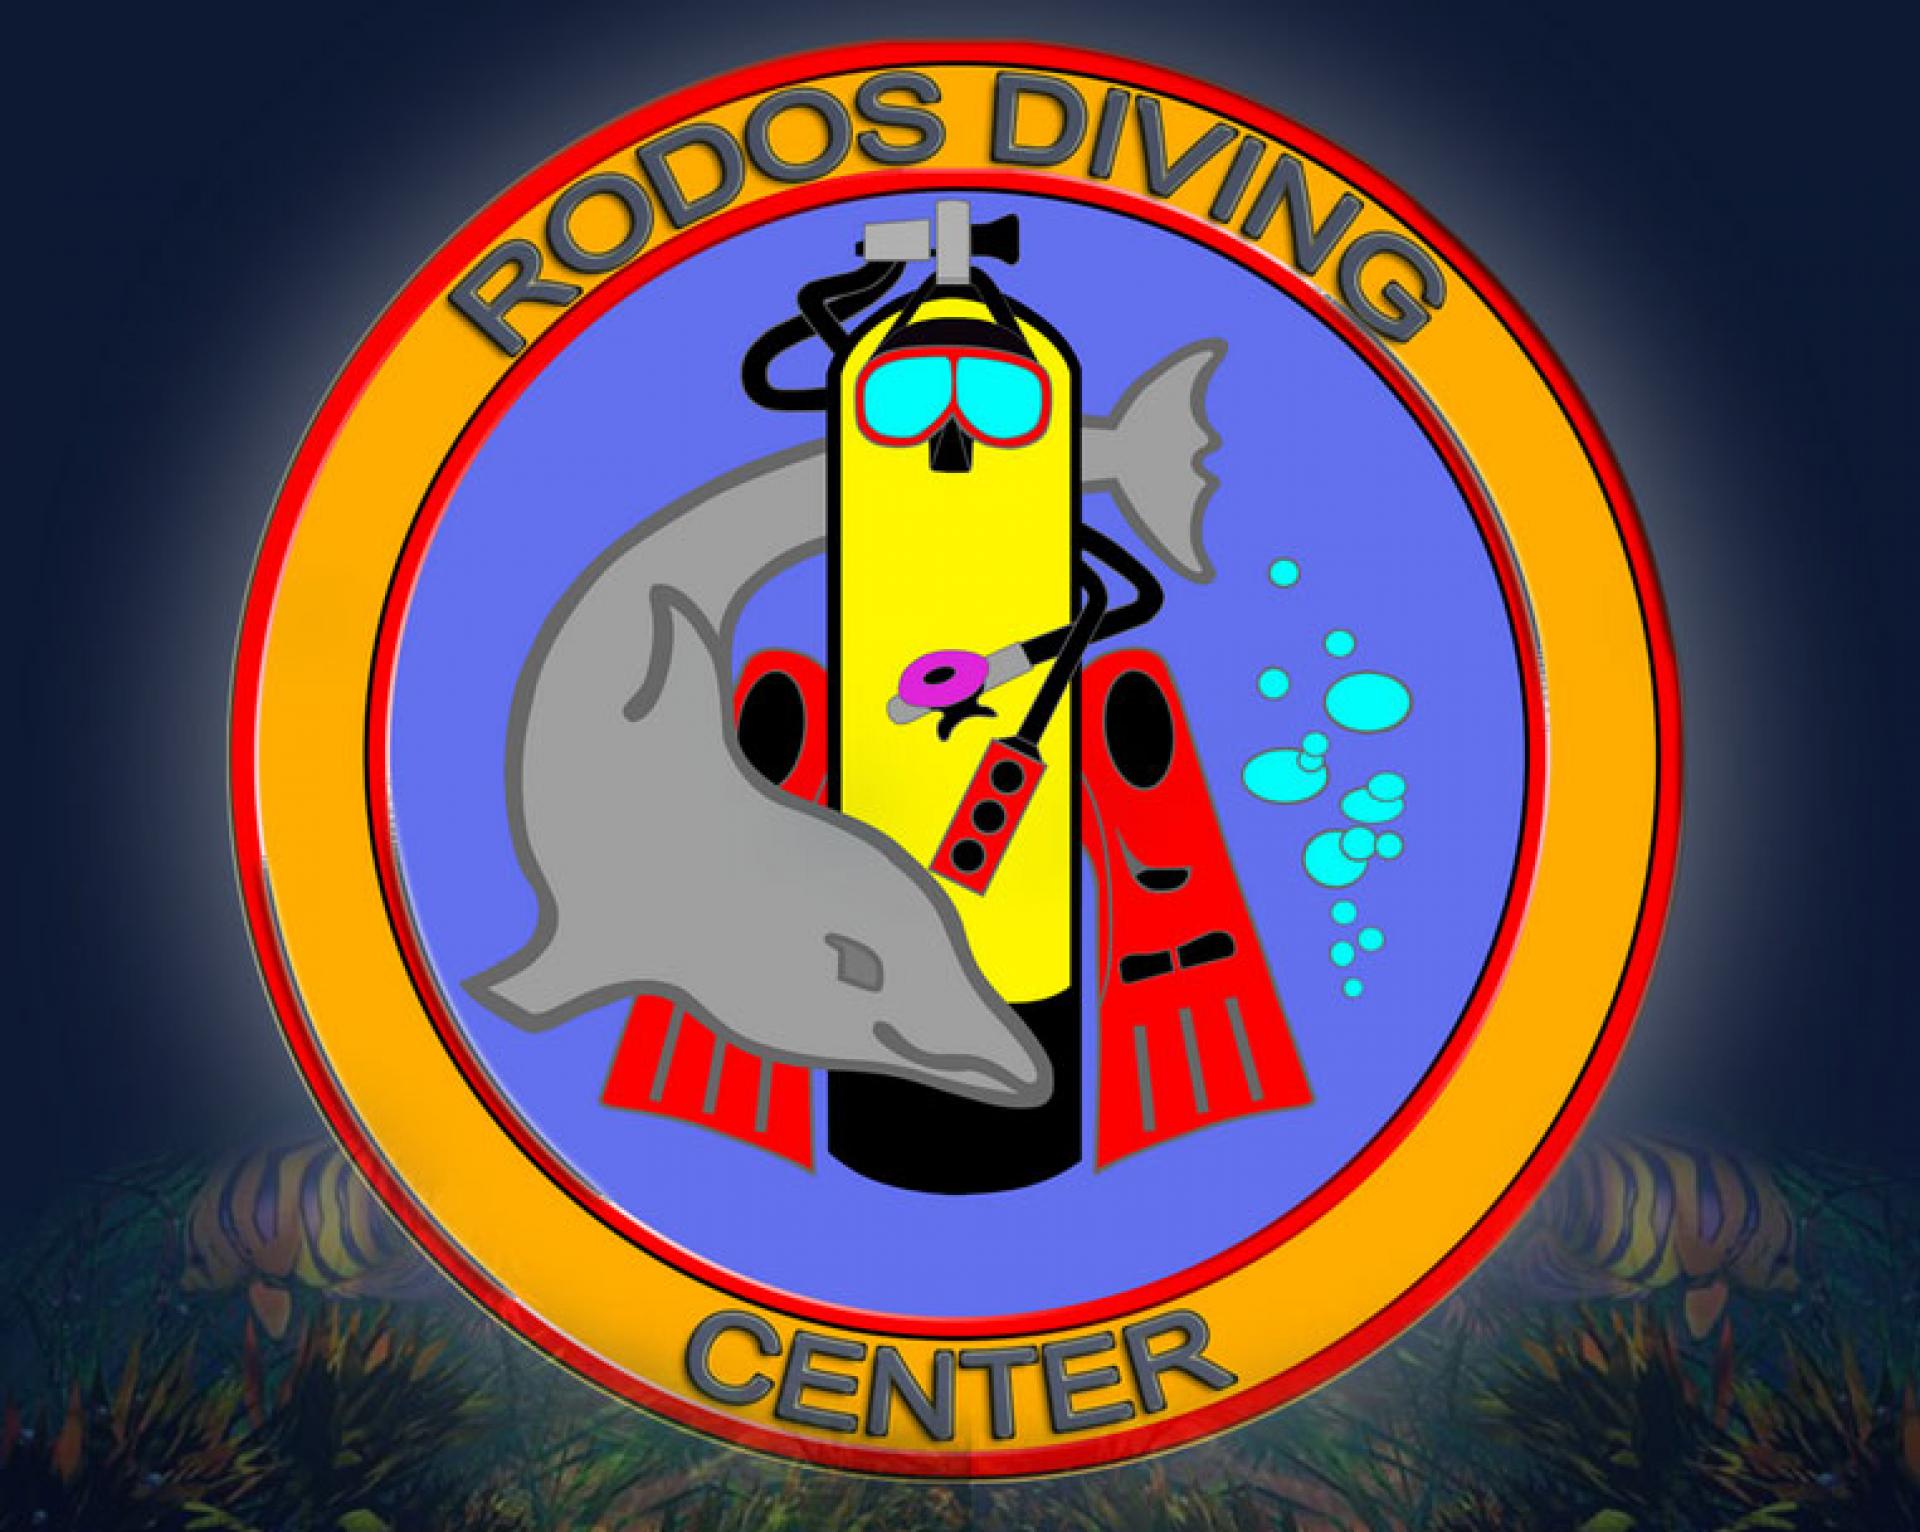 Rhodos Diving